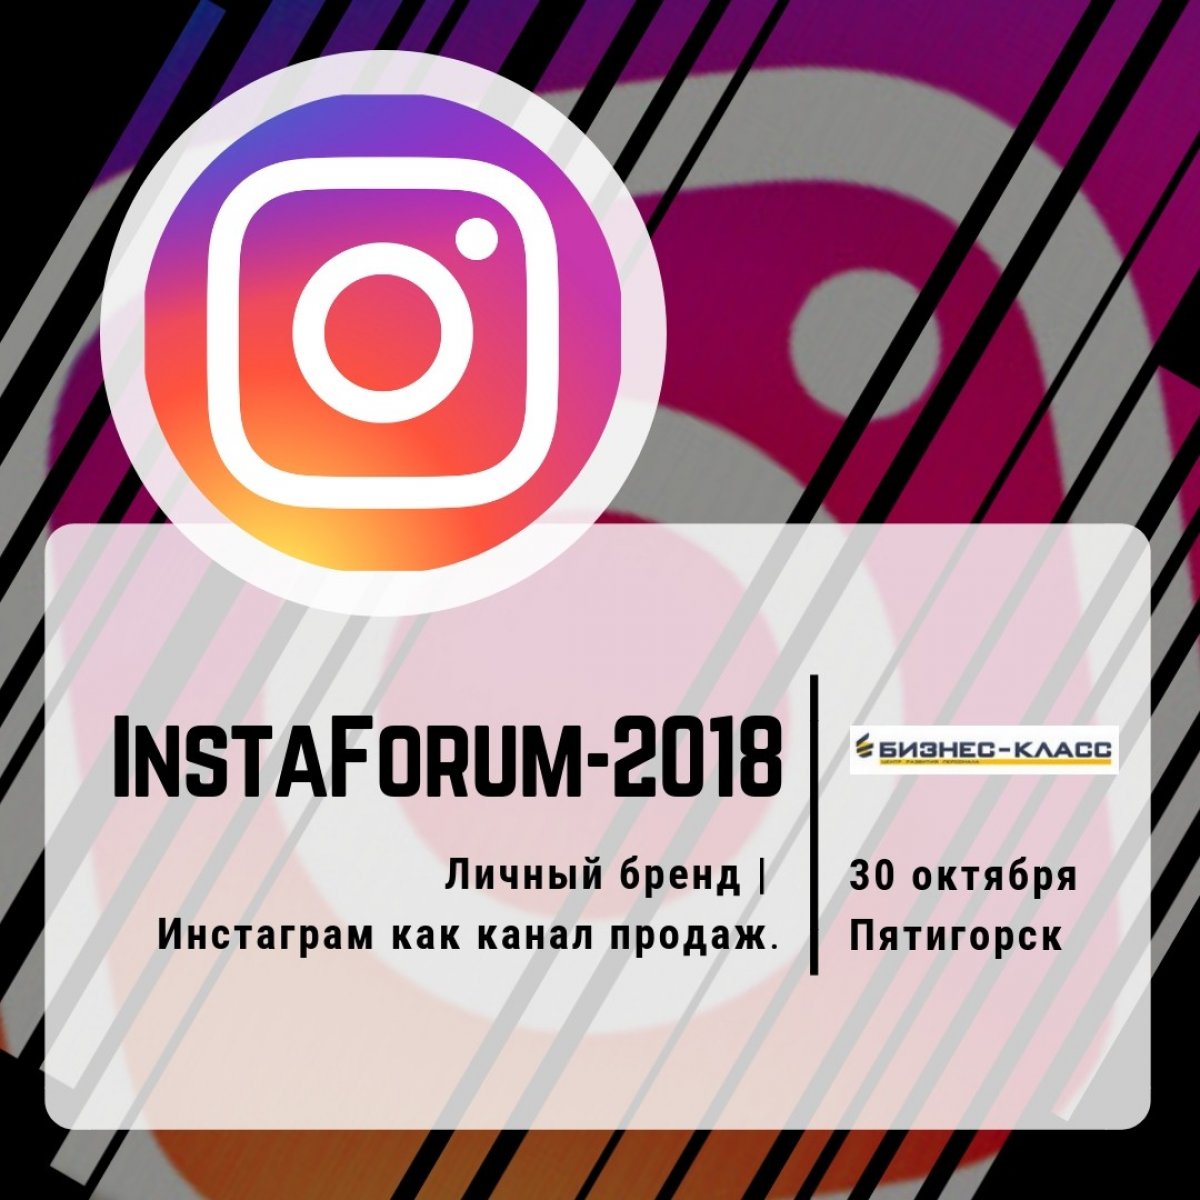 Осталась всего 1 неделя до InstaForum-2018 в Пятигорске - первого форума по продвижению в Инстаграм! Подробнее 👉 @b_class